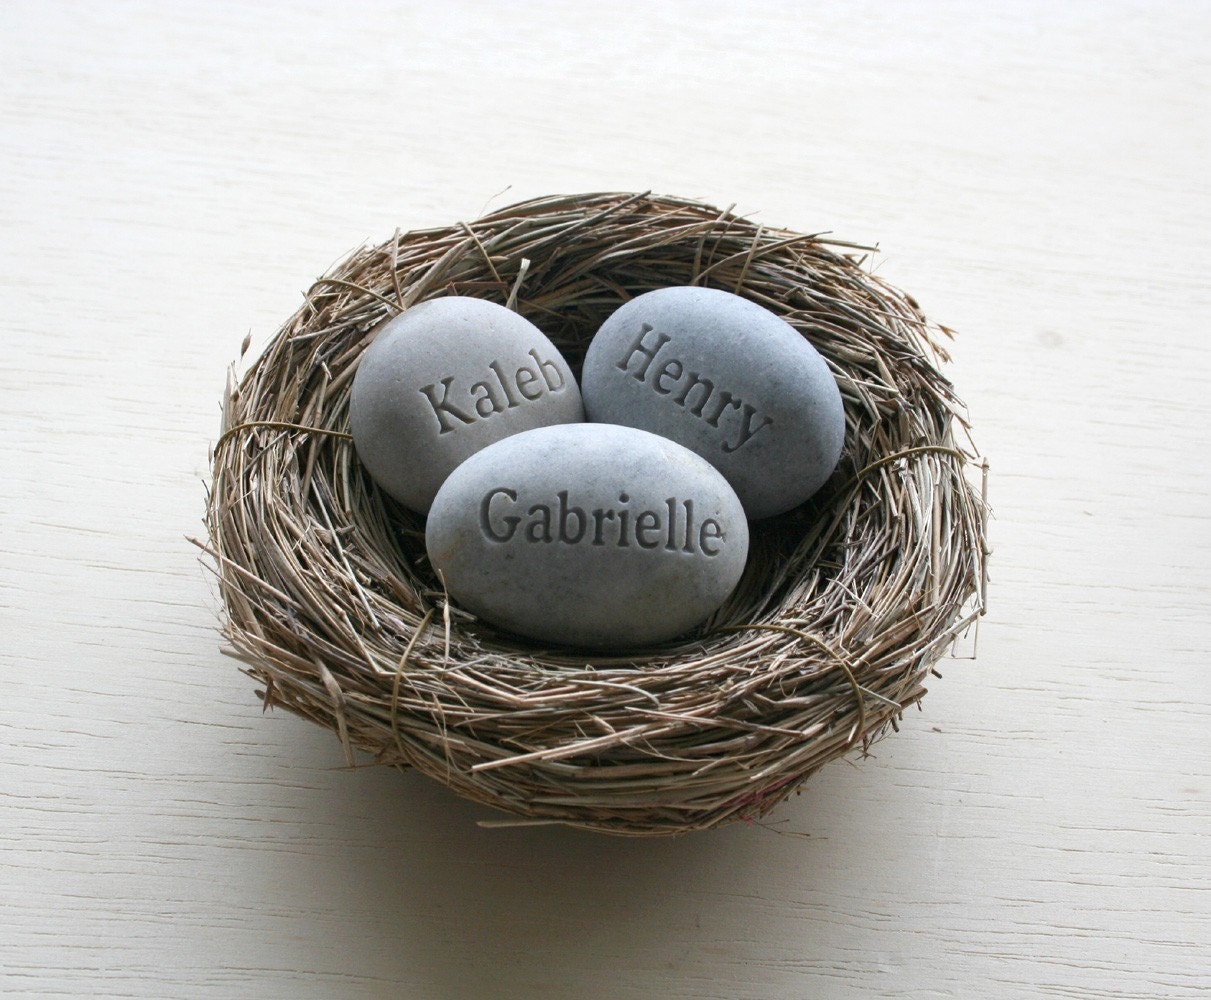 Mom's Nest (c) - set of 3 custom engraved name stones in bird nest